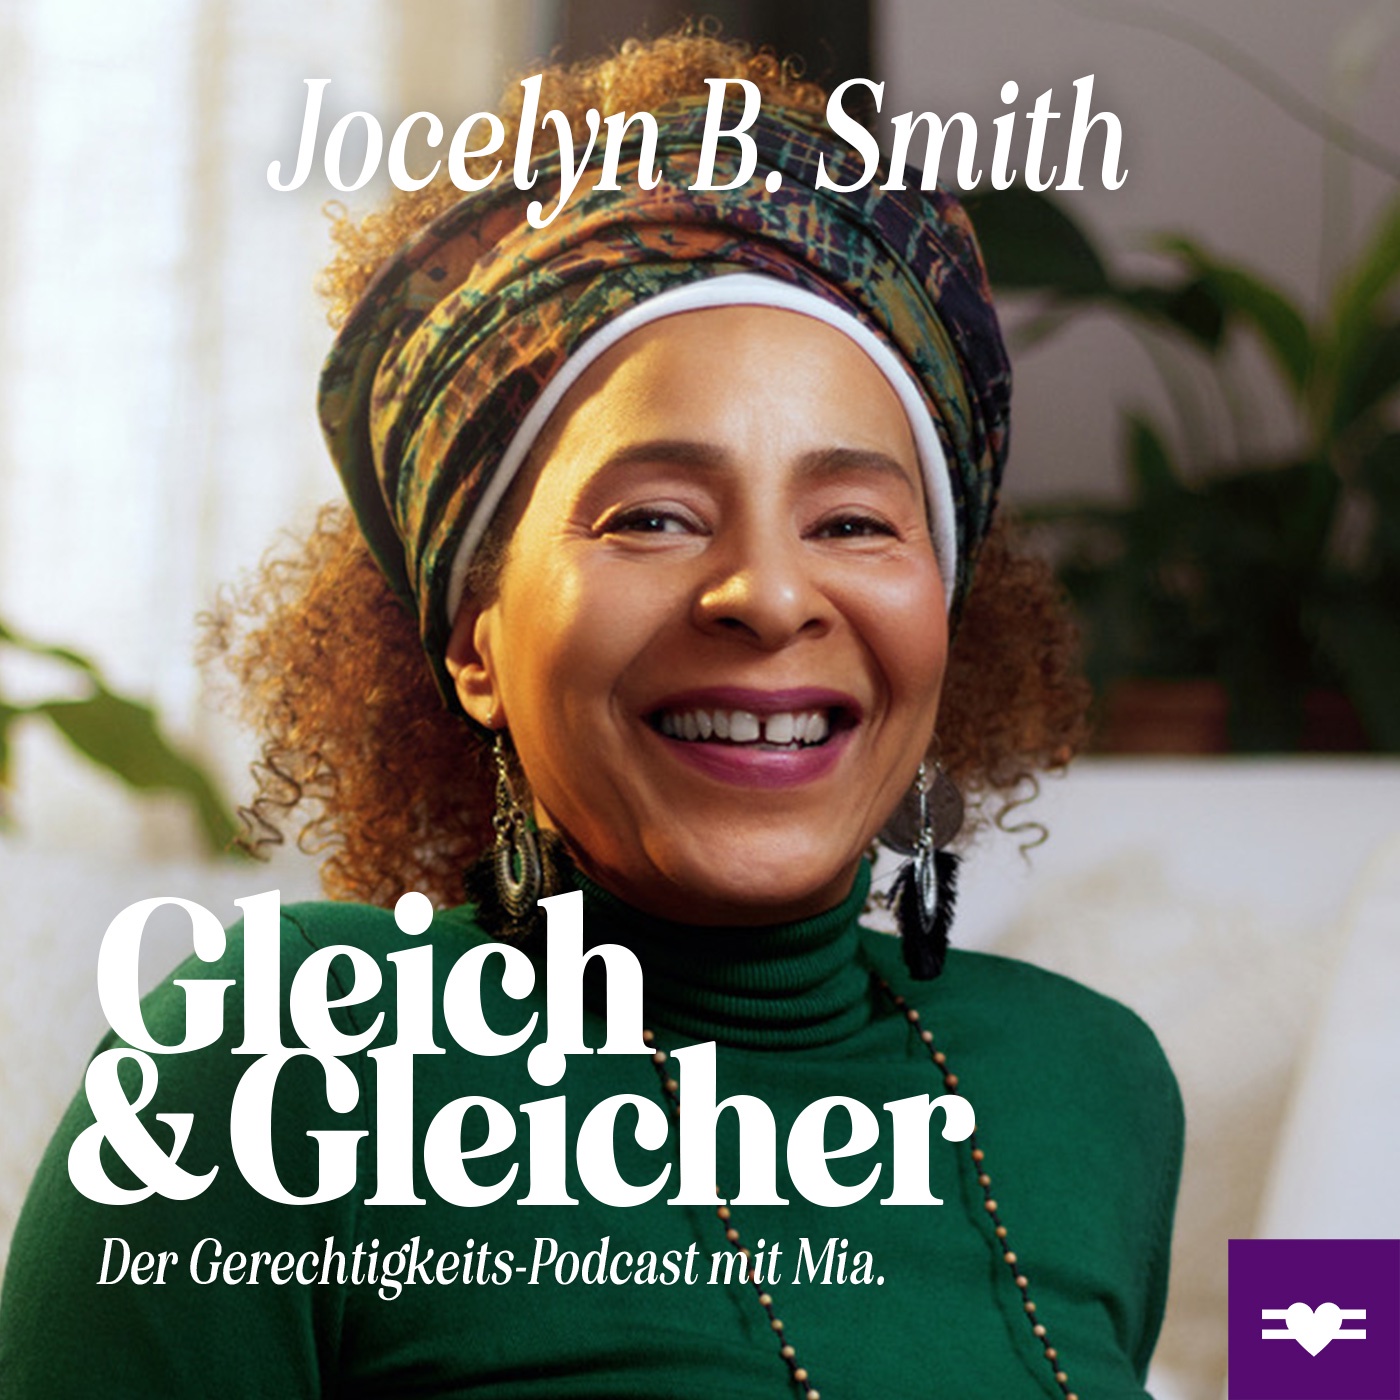 Jocelyn B.Smith über Selbstreflexion, Community und Träume